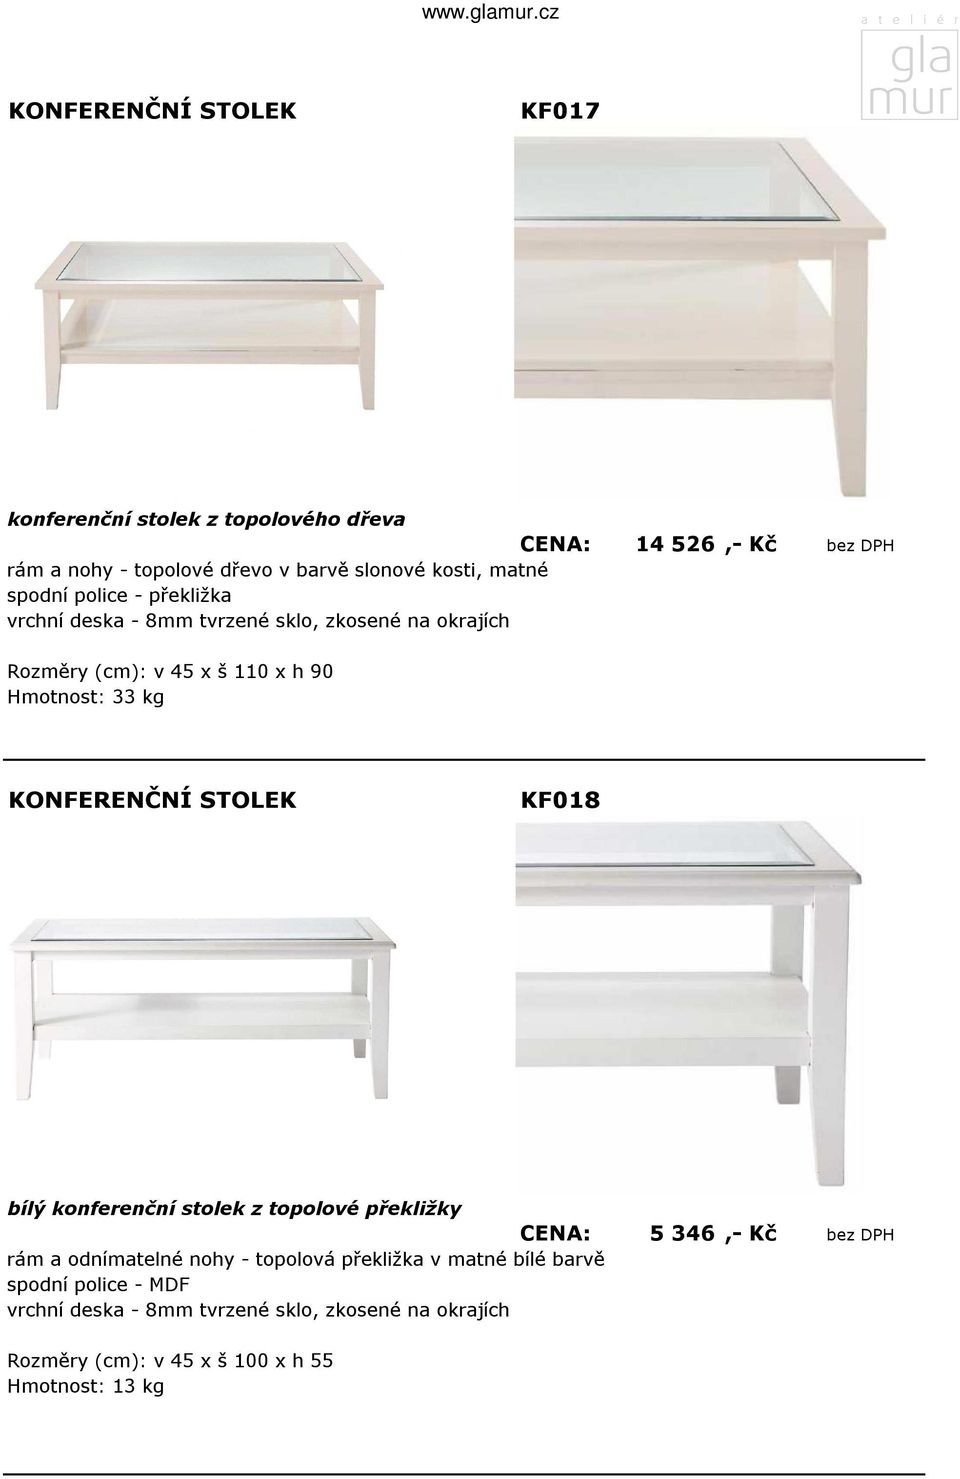 KF018 bílý konferenční stolek z topolové překližky CENA: 5 346,- Kč bez DPH rám a odnímatelné nohy - topolová překližka v matné